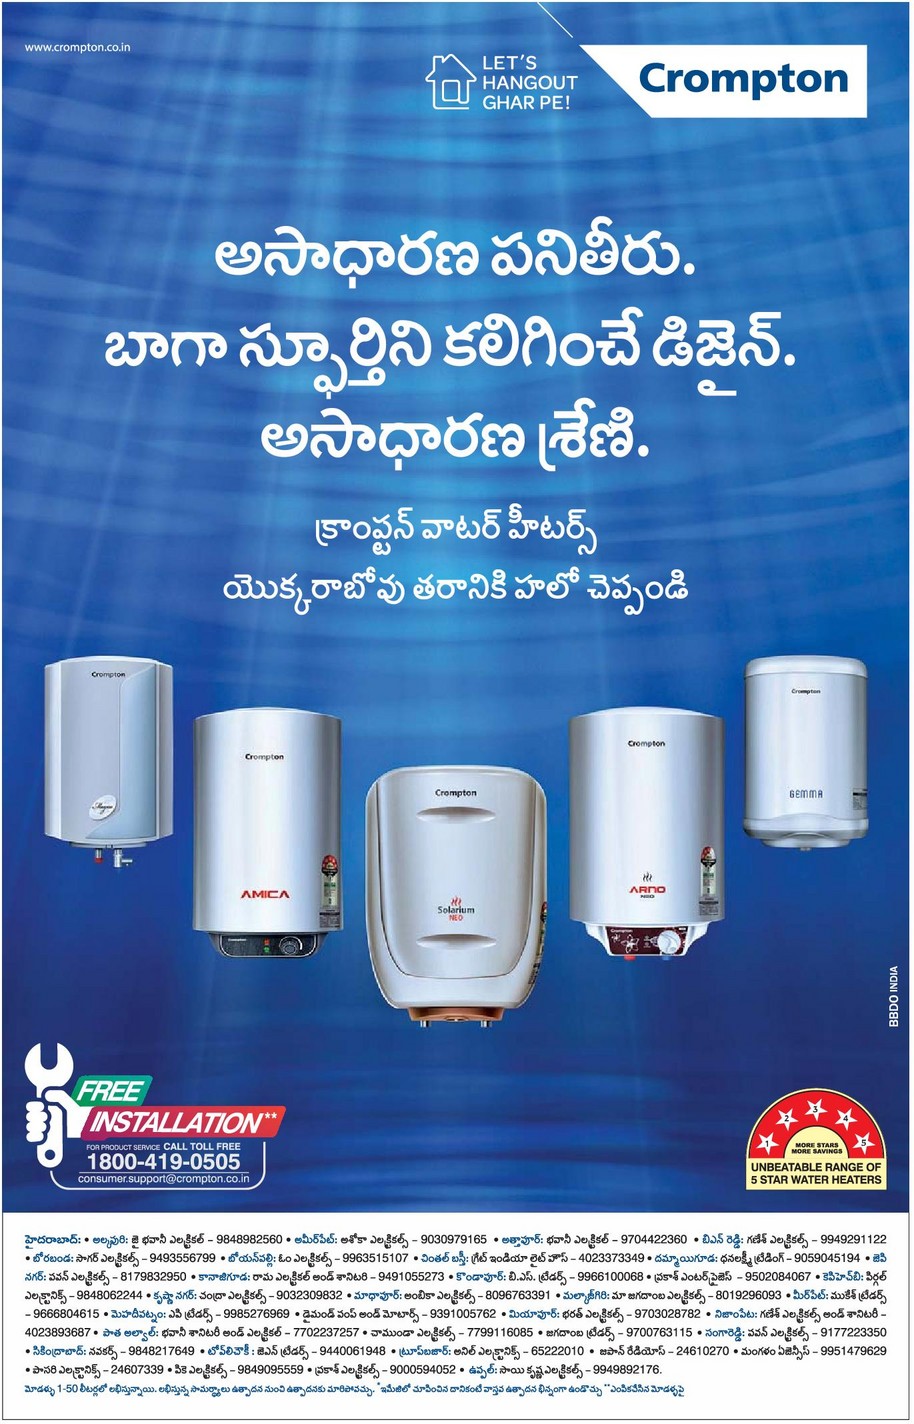 crompton-water-heaters-asadhaaranamaina-panitheeru-ad-eenadu-hyderabad-24-11-2018.jpeg